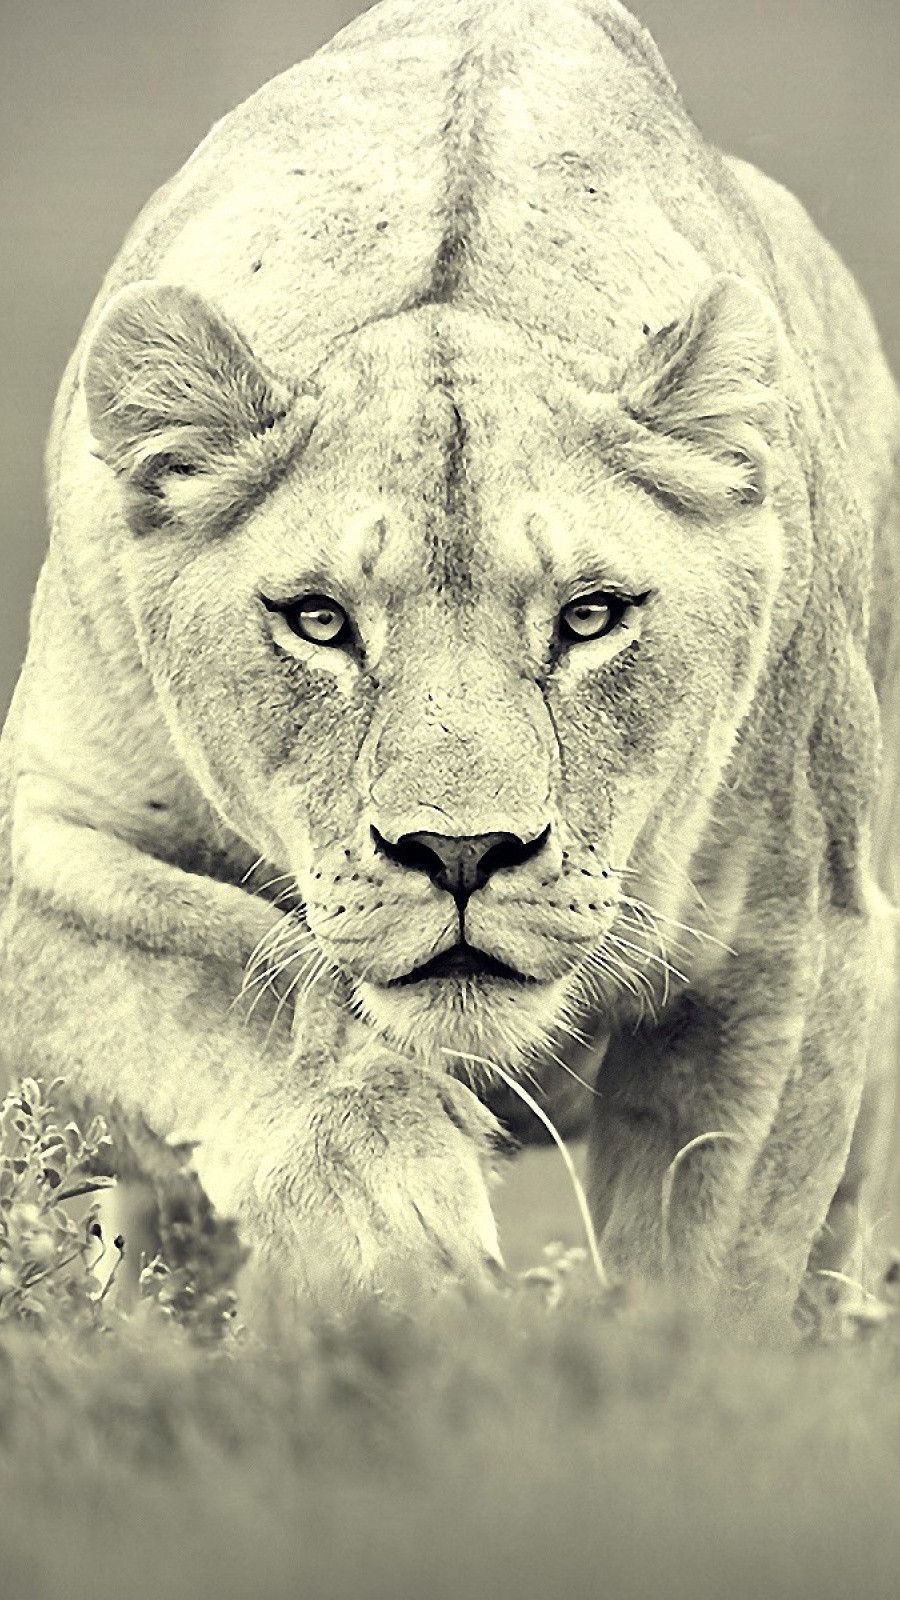 بهترین والپیپر شیر جنگل برای گوشی افراد قوی و باهوش